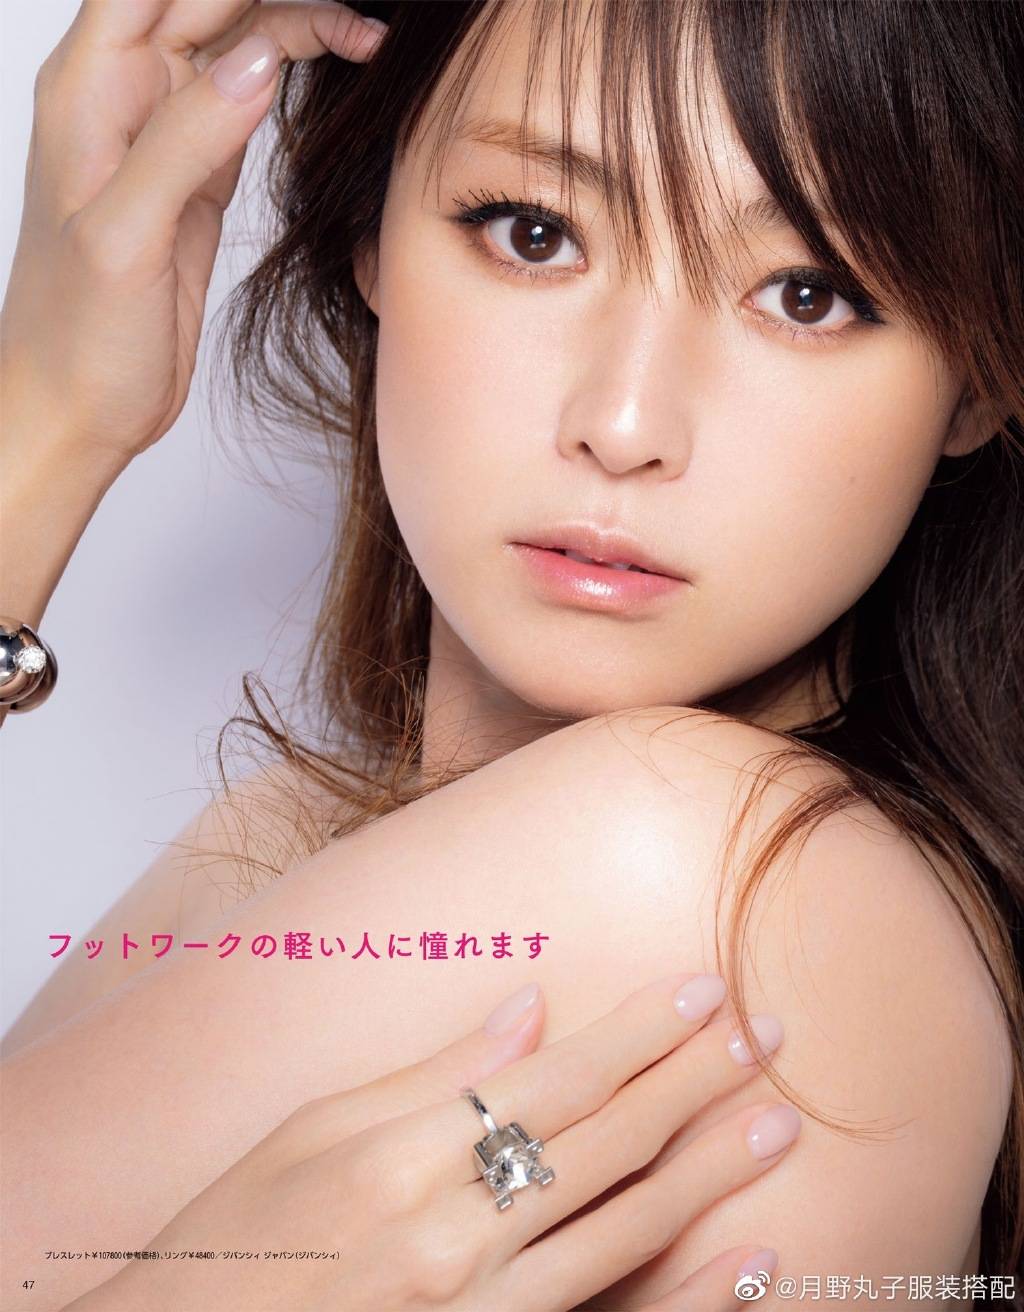 日本女星深田恭子最新靓丽写真！肤白貌美大长腿性感撩人